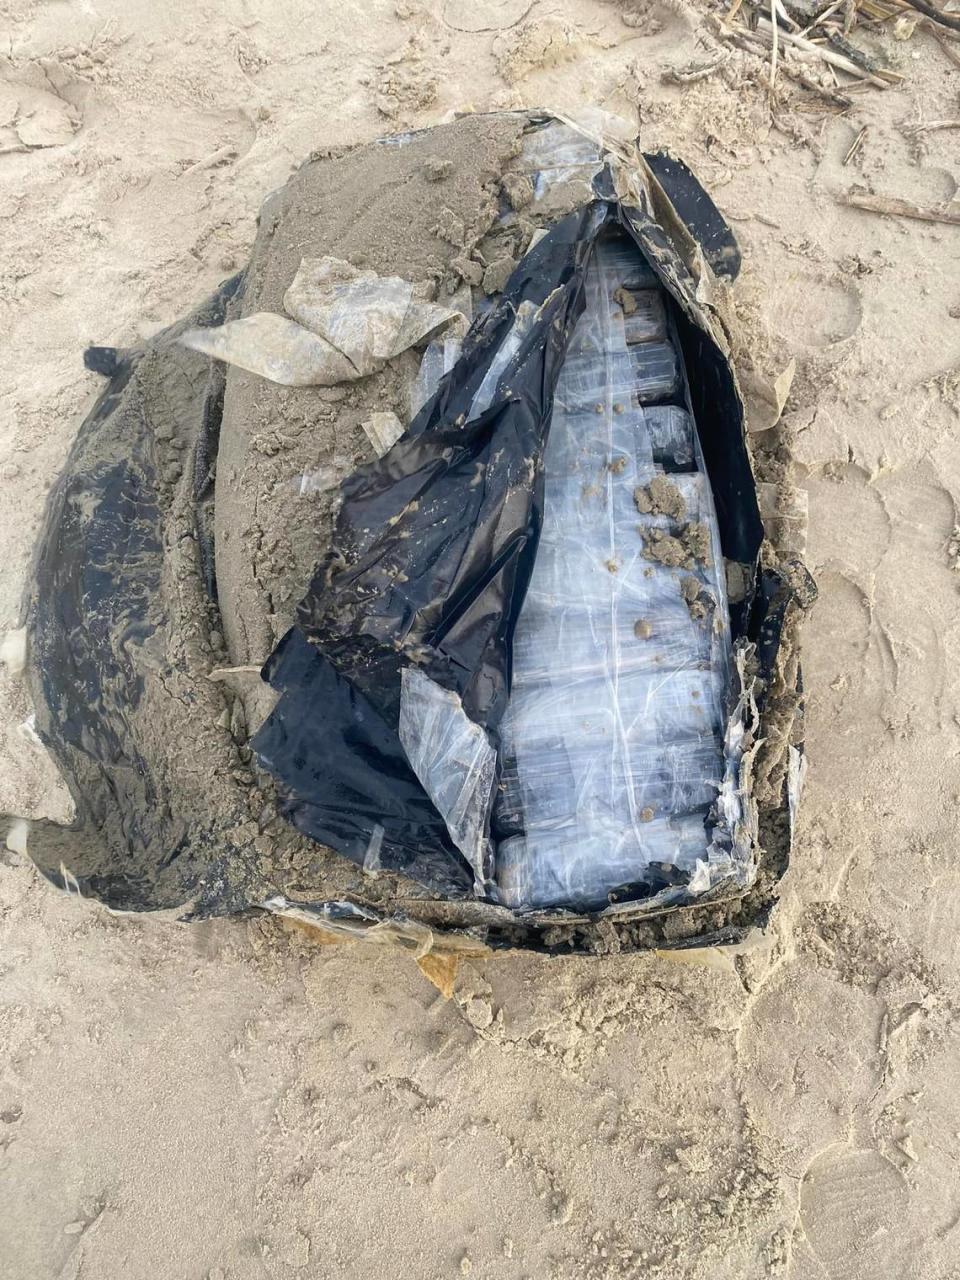 A “suspicious package” was found on a beach, Texas cops said.